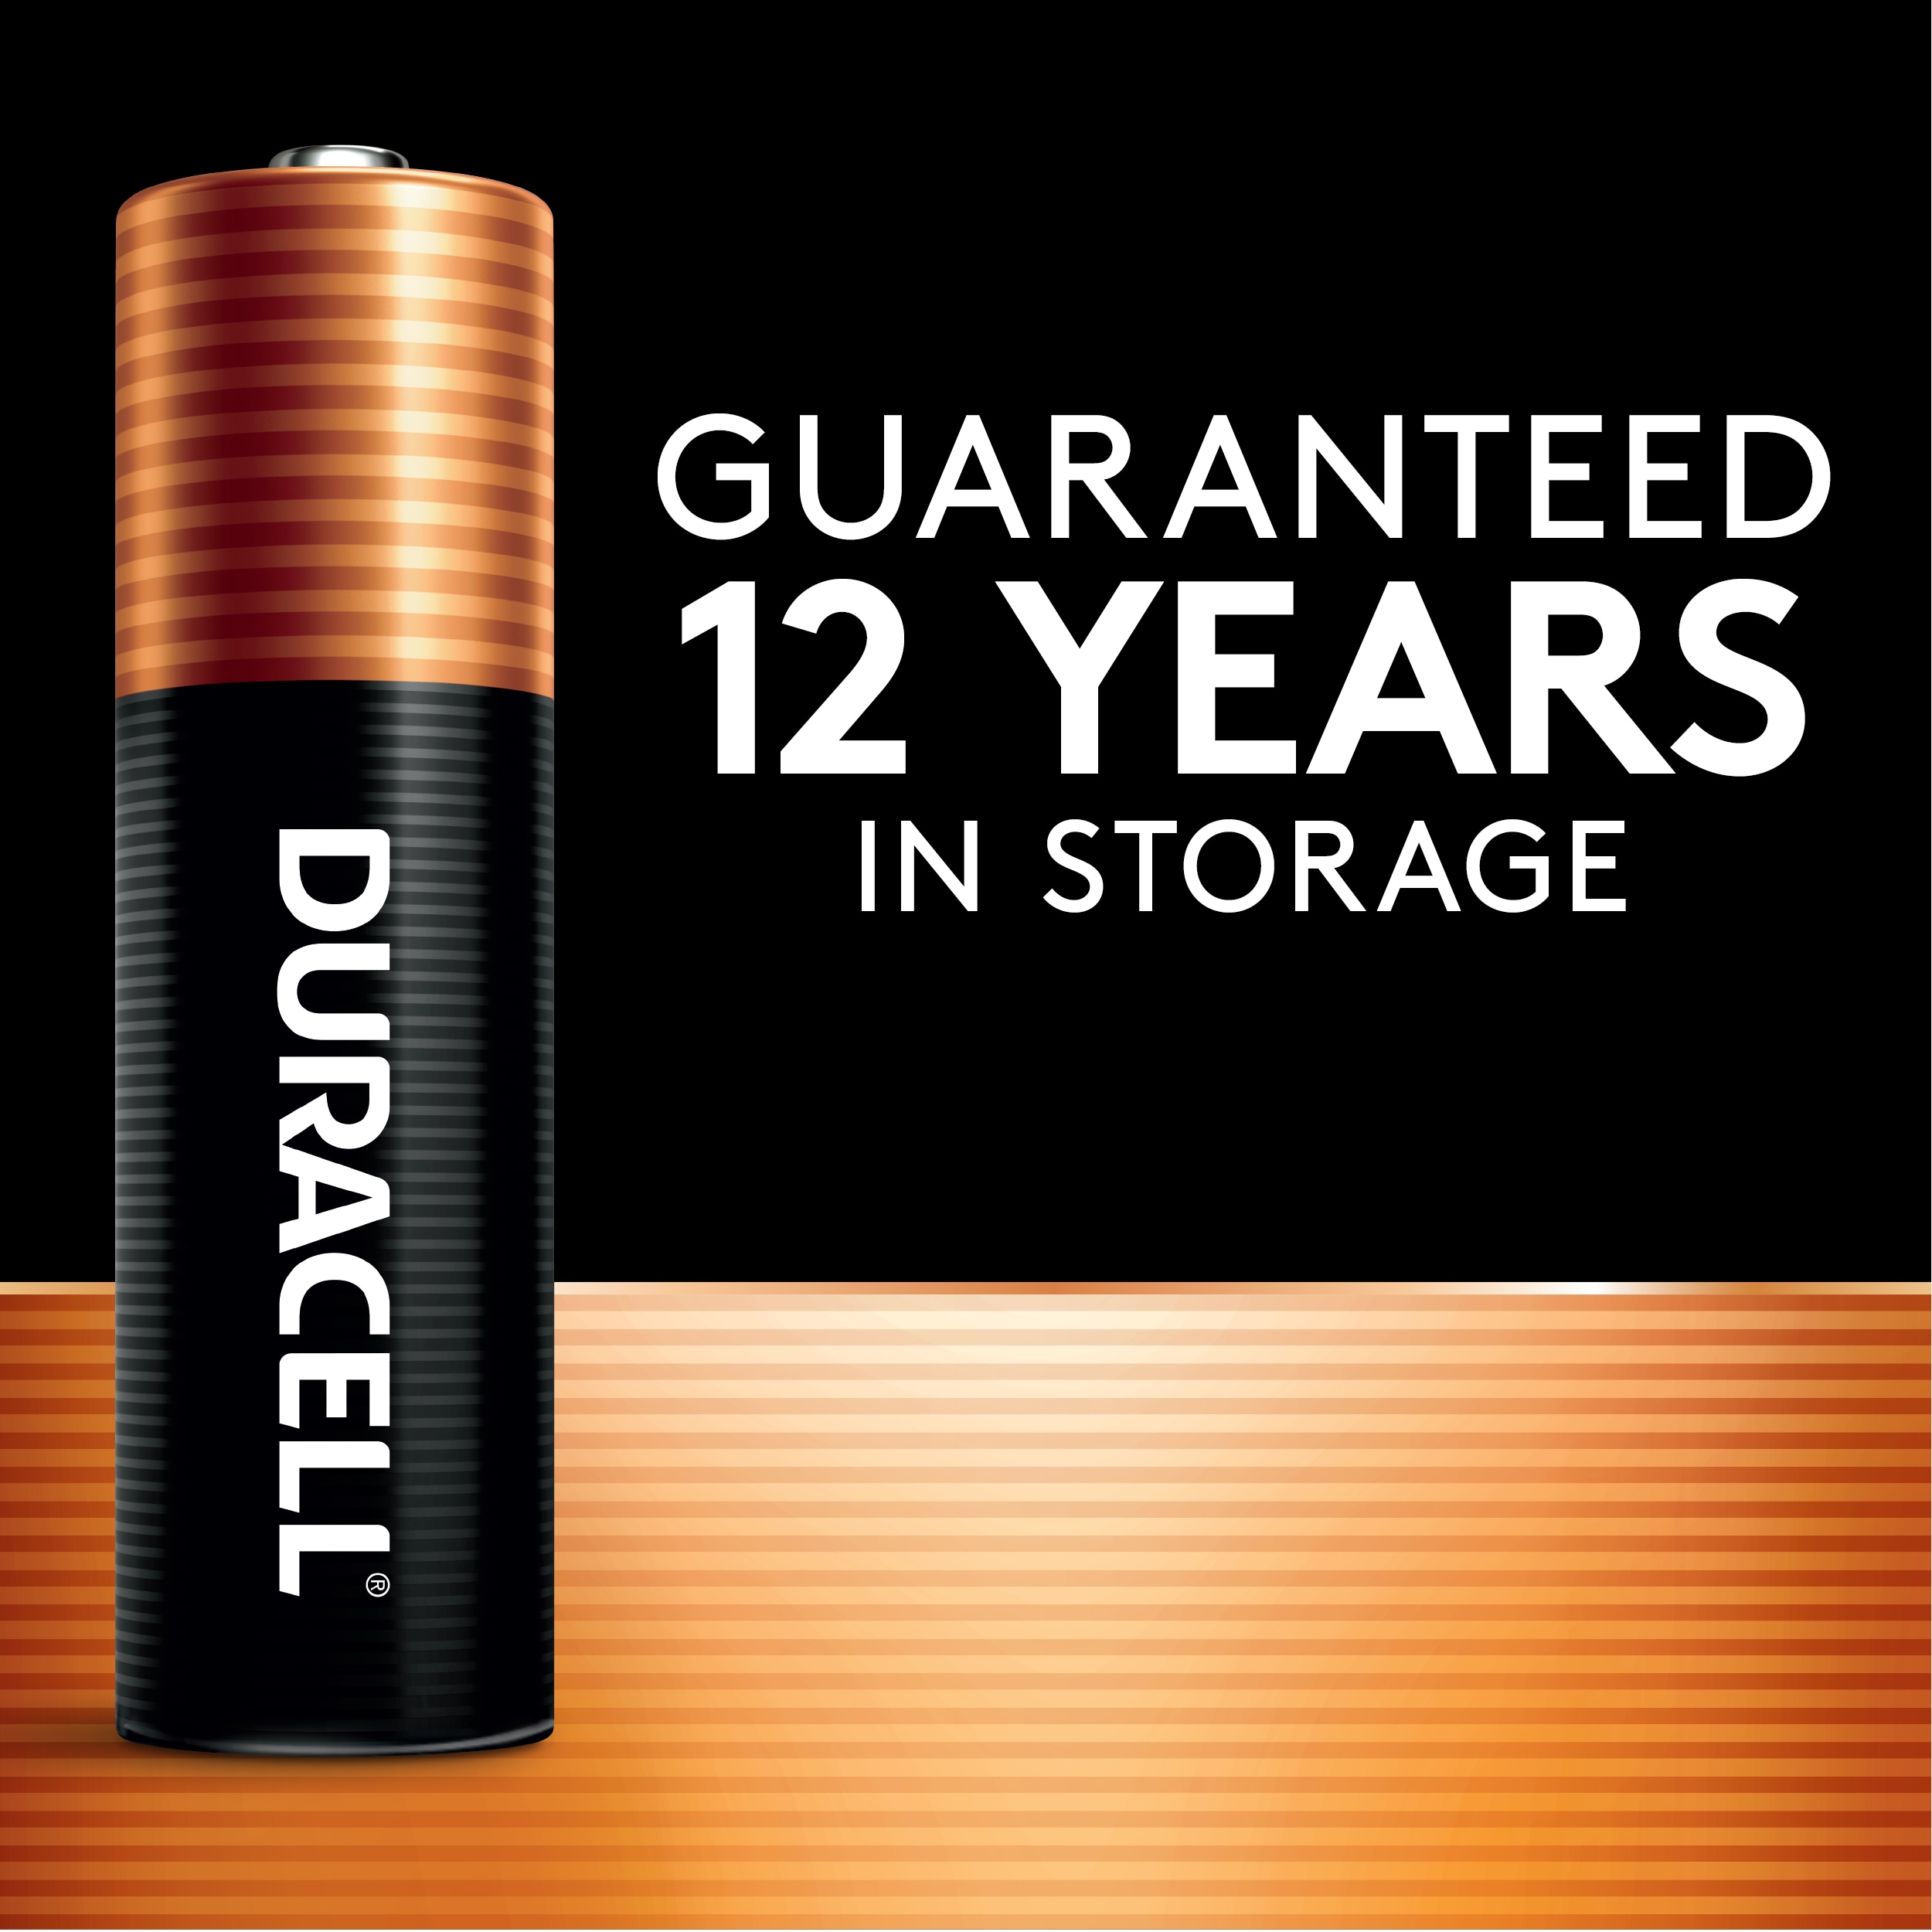 Duracell Alkaline AA Batteries, 16-Pack